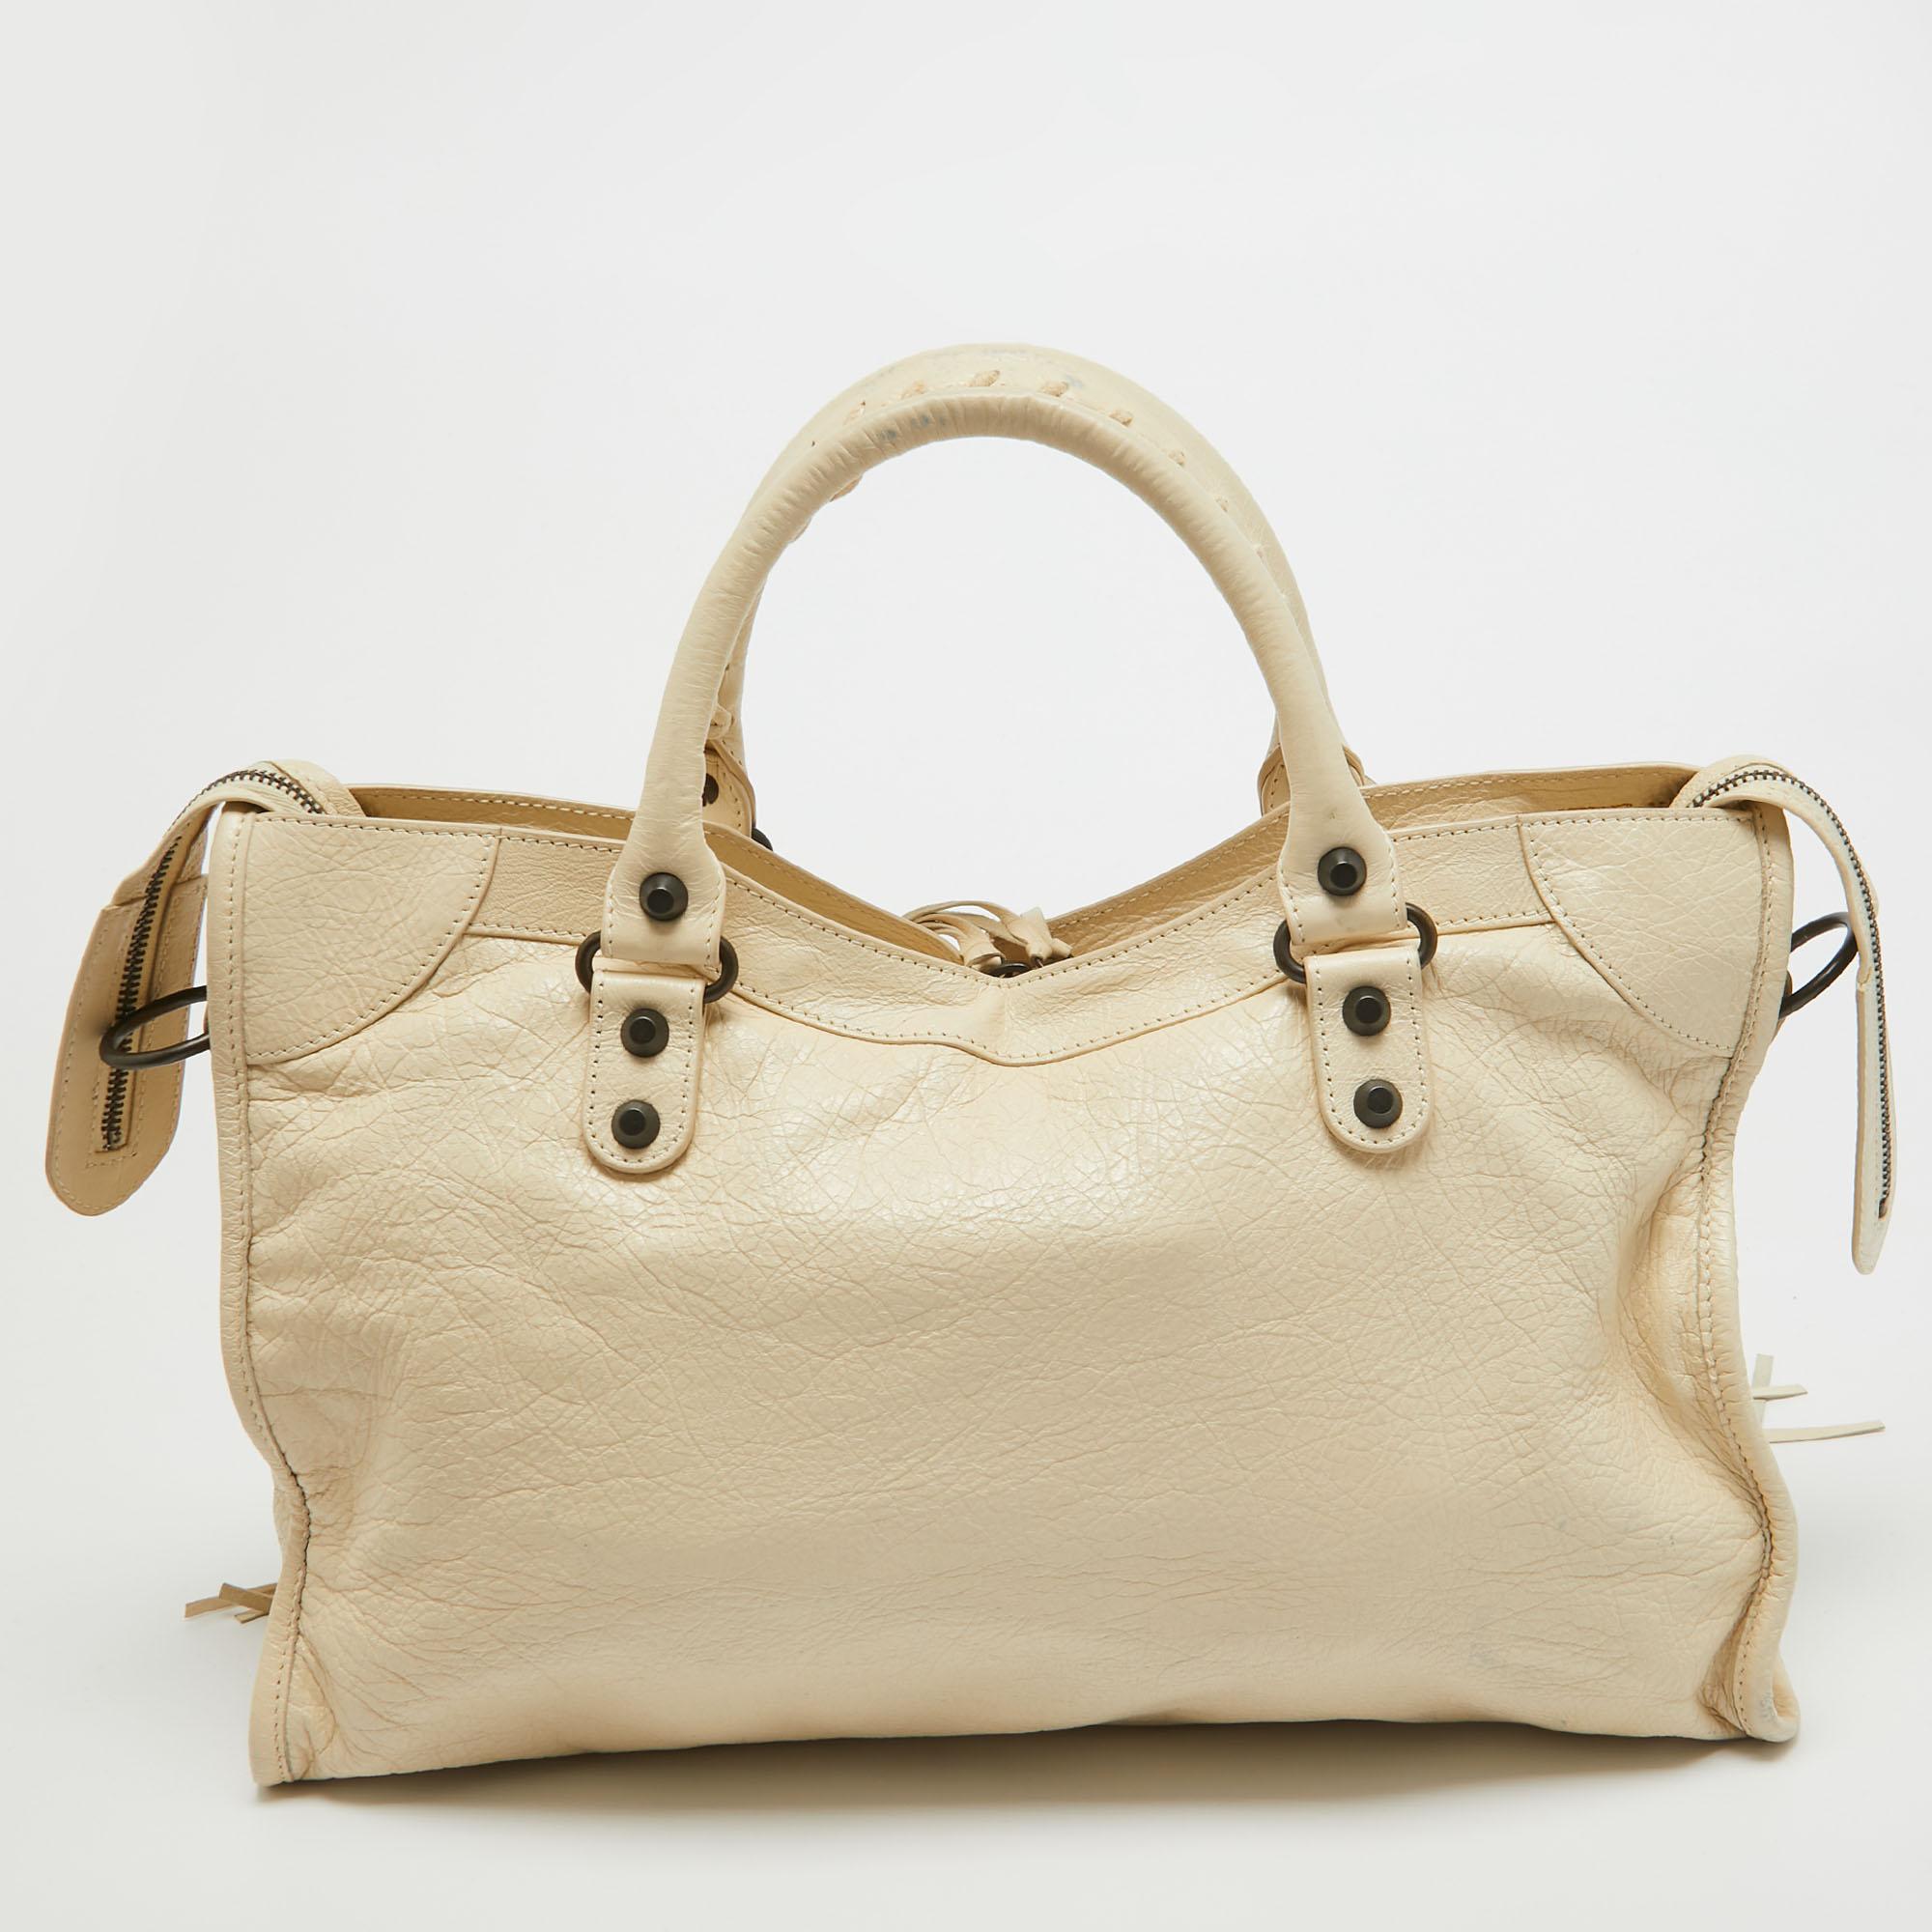 Offrez-vous le luxe avec ce sac Balenciaga. Méticuleusement fabriqué à partir de matériaux de première qualité, il allie un design exquis, un savoir-faire impeccable et une élégance intemporelle. Cet accessoire de mode rehausse votre